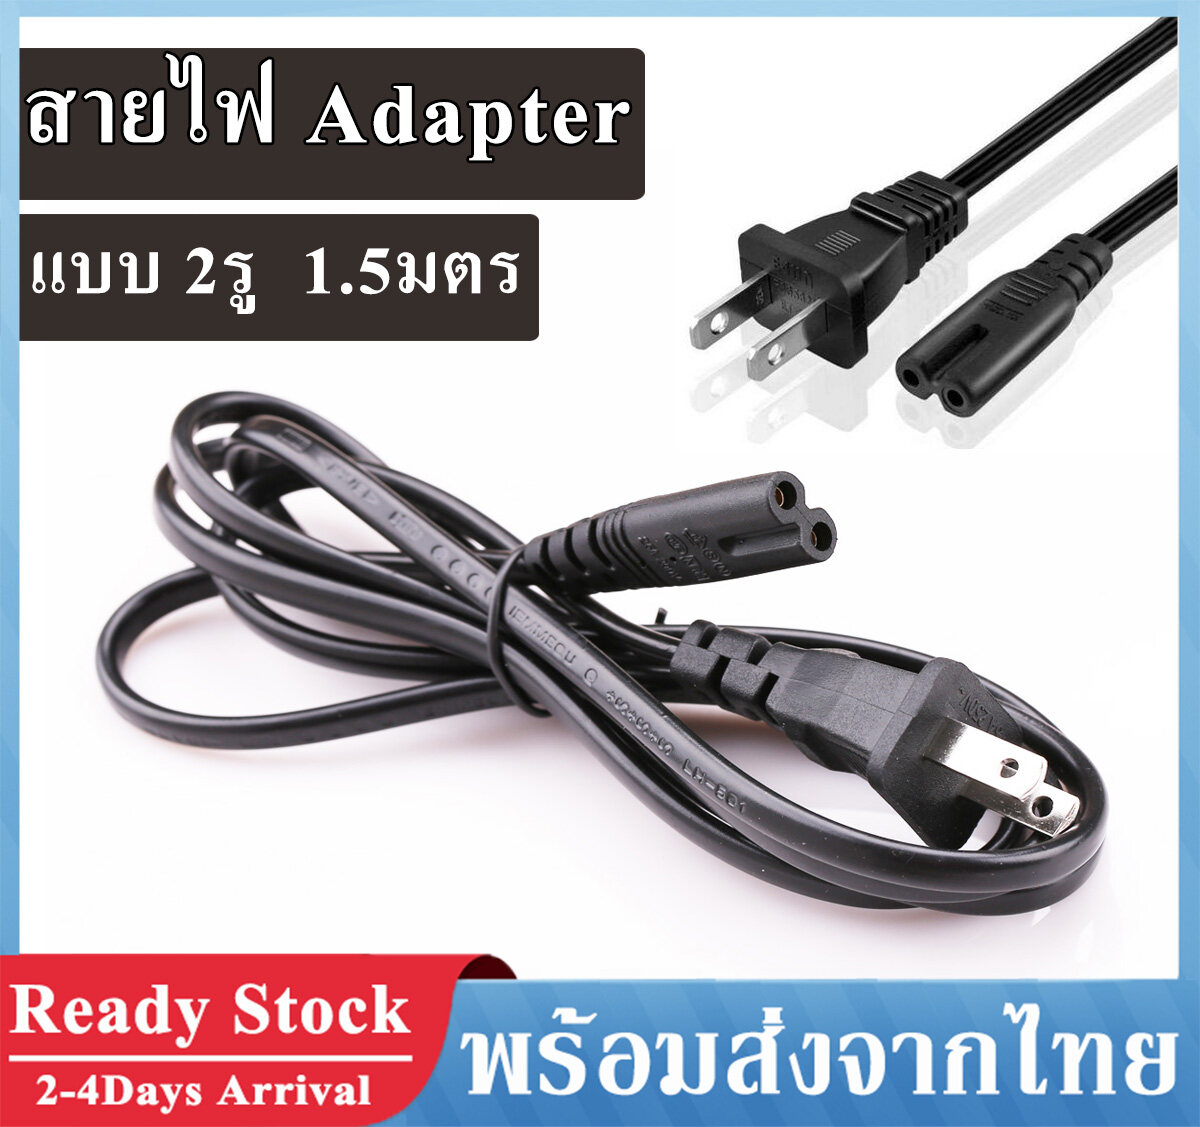 สายไฟ Ac Adapter สาย Ac Power 2 รู 1.5มตร ปลั๊กเสียบแบบ 2 ขา (us Plug) สายไฟ Ac แบบ 2 รูกลม 1.5m Ac Power Supply Adapter Cord Cable สำหรับ Printer วิทยุ และอื่นๆ A57. 